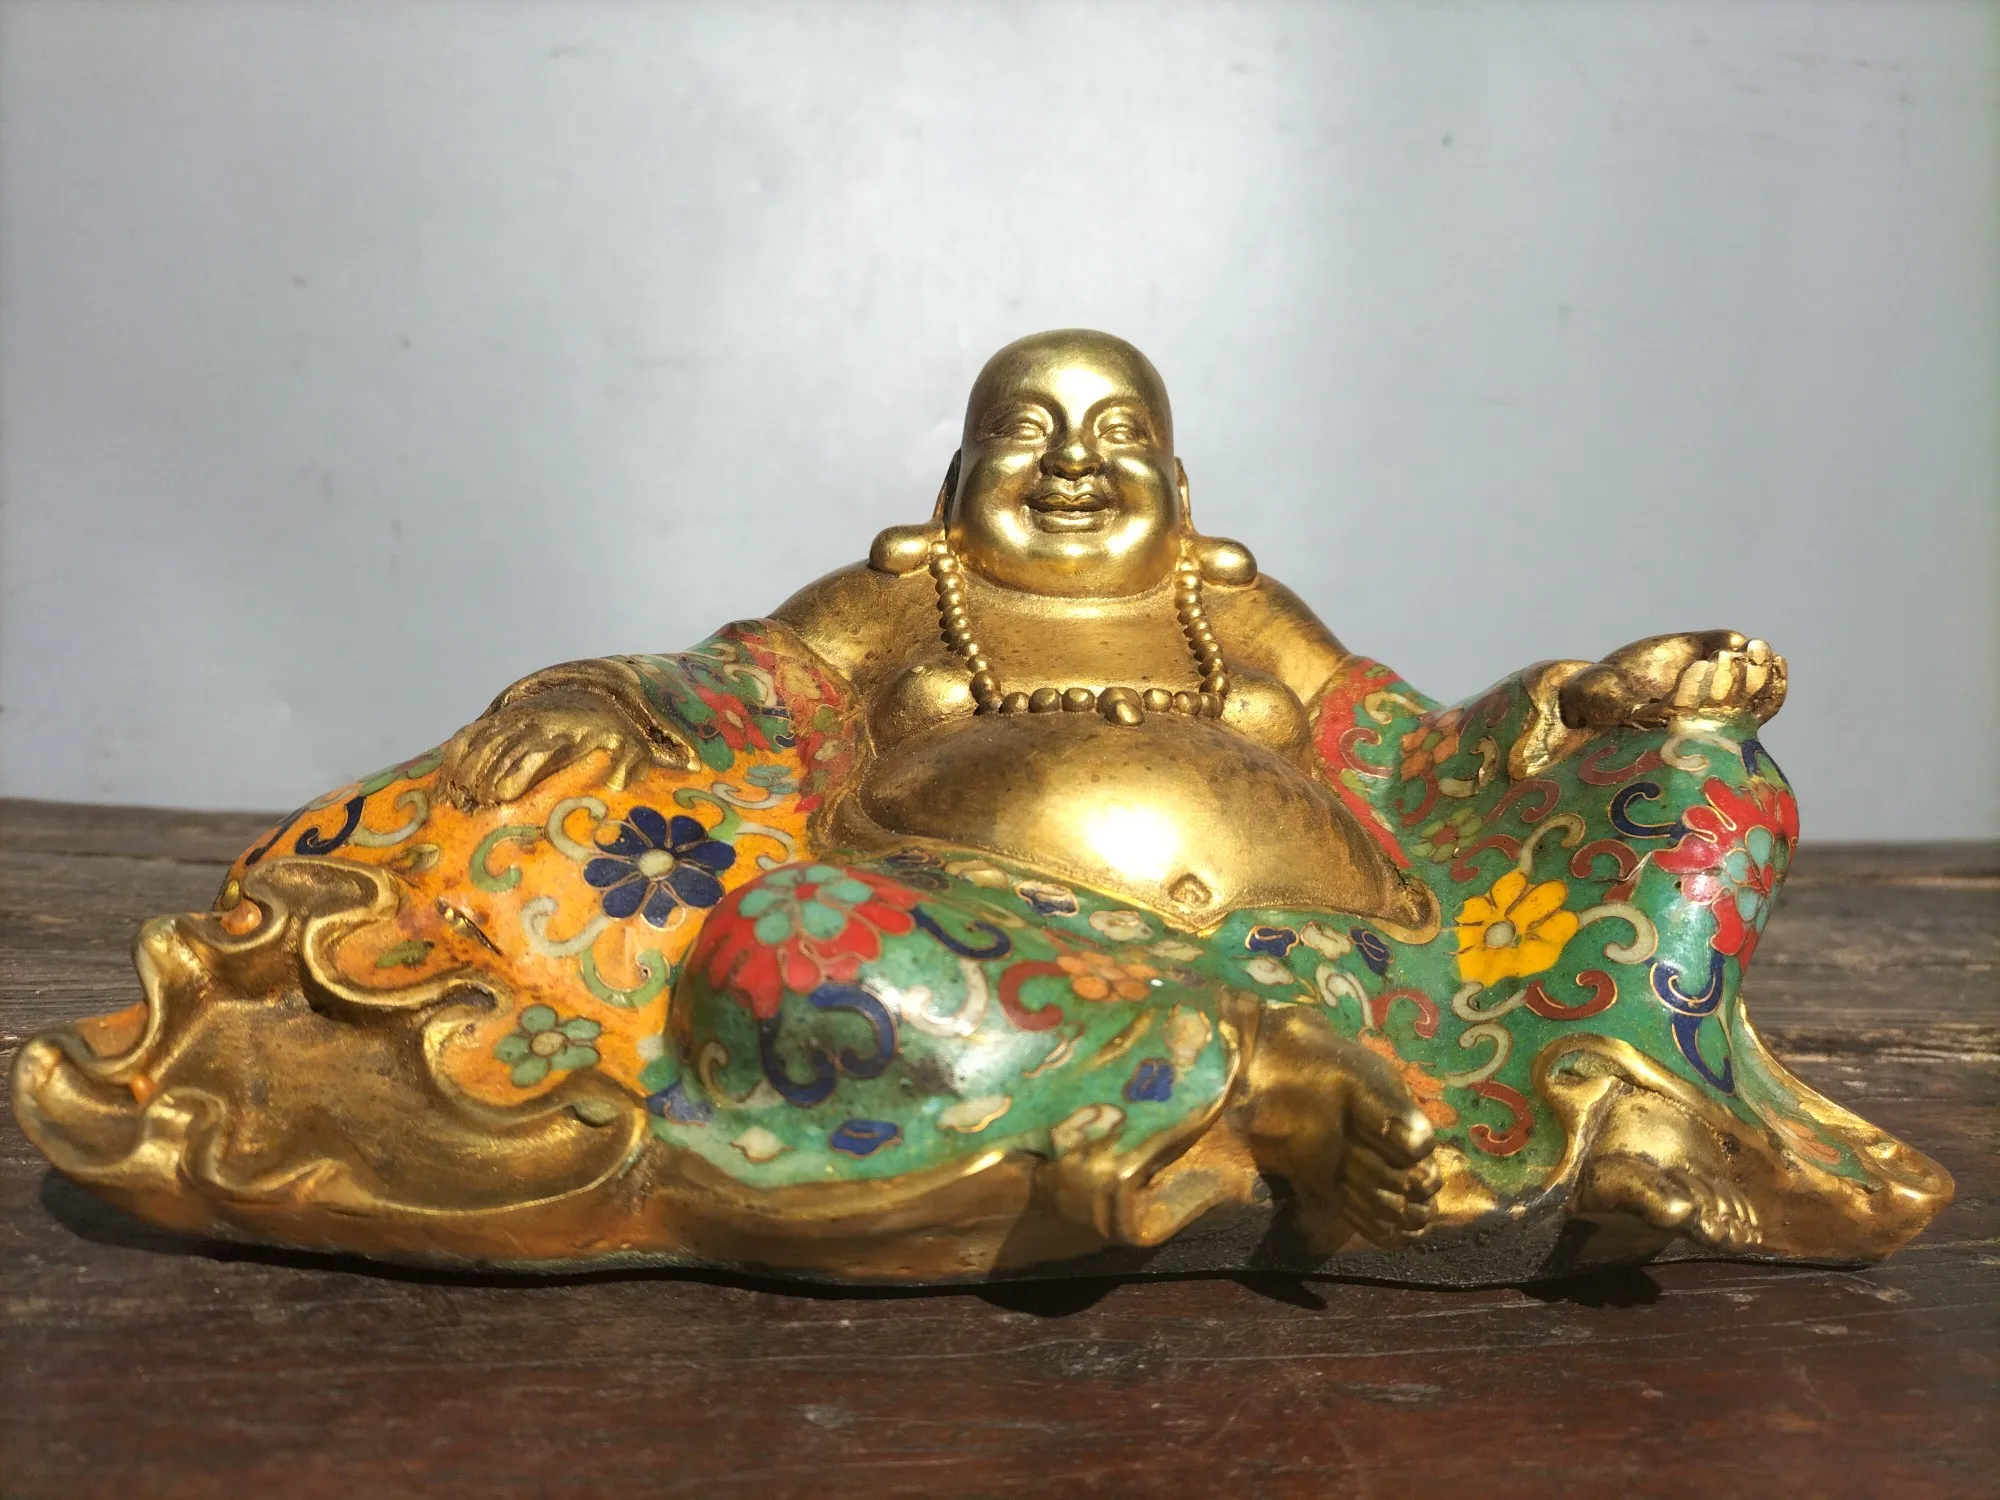 

Коллекция тибетских храмов 9 дюймов, старое эмалированное золото, мешок, Будда Майтрея, Amass, богатство, поклонение, зал, городской дом, Экзорцизм